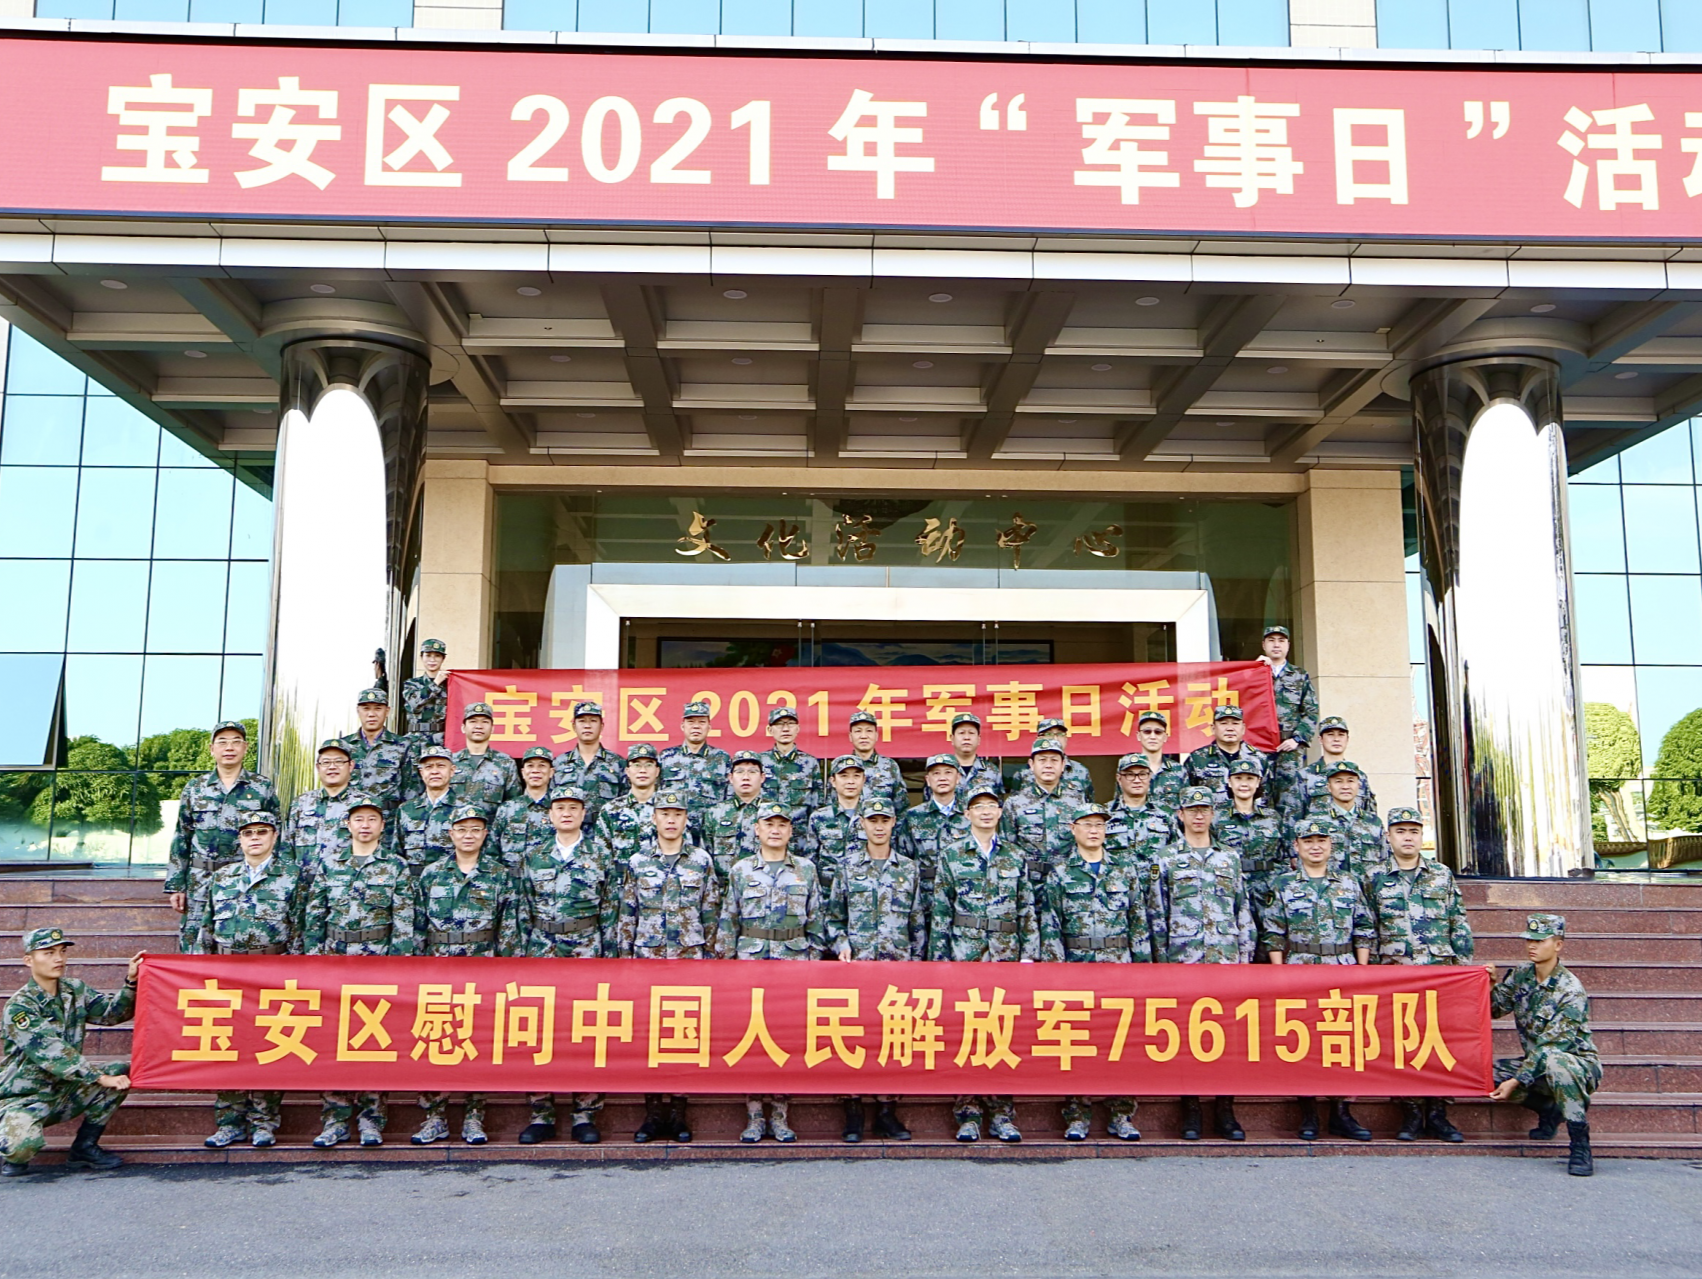 宝安举行2021年“军事日”活动